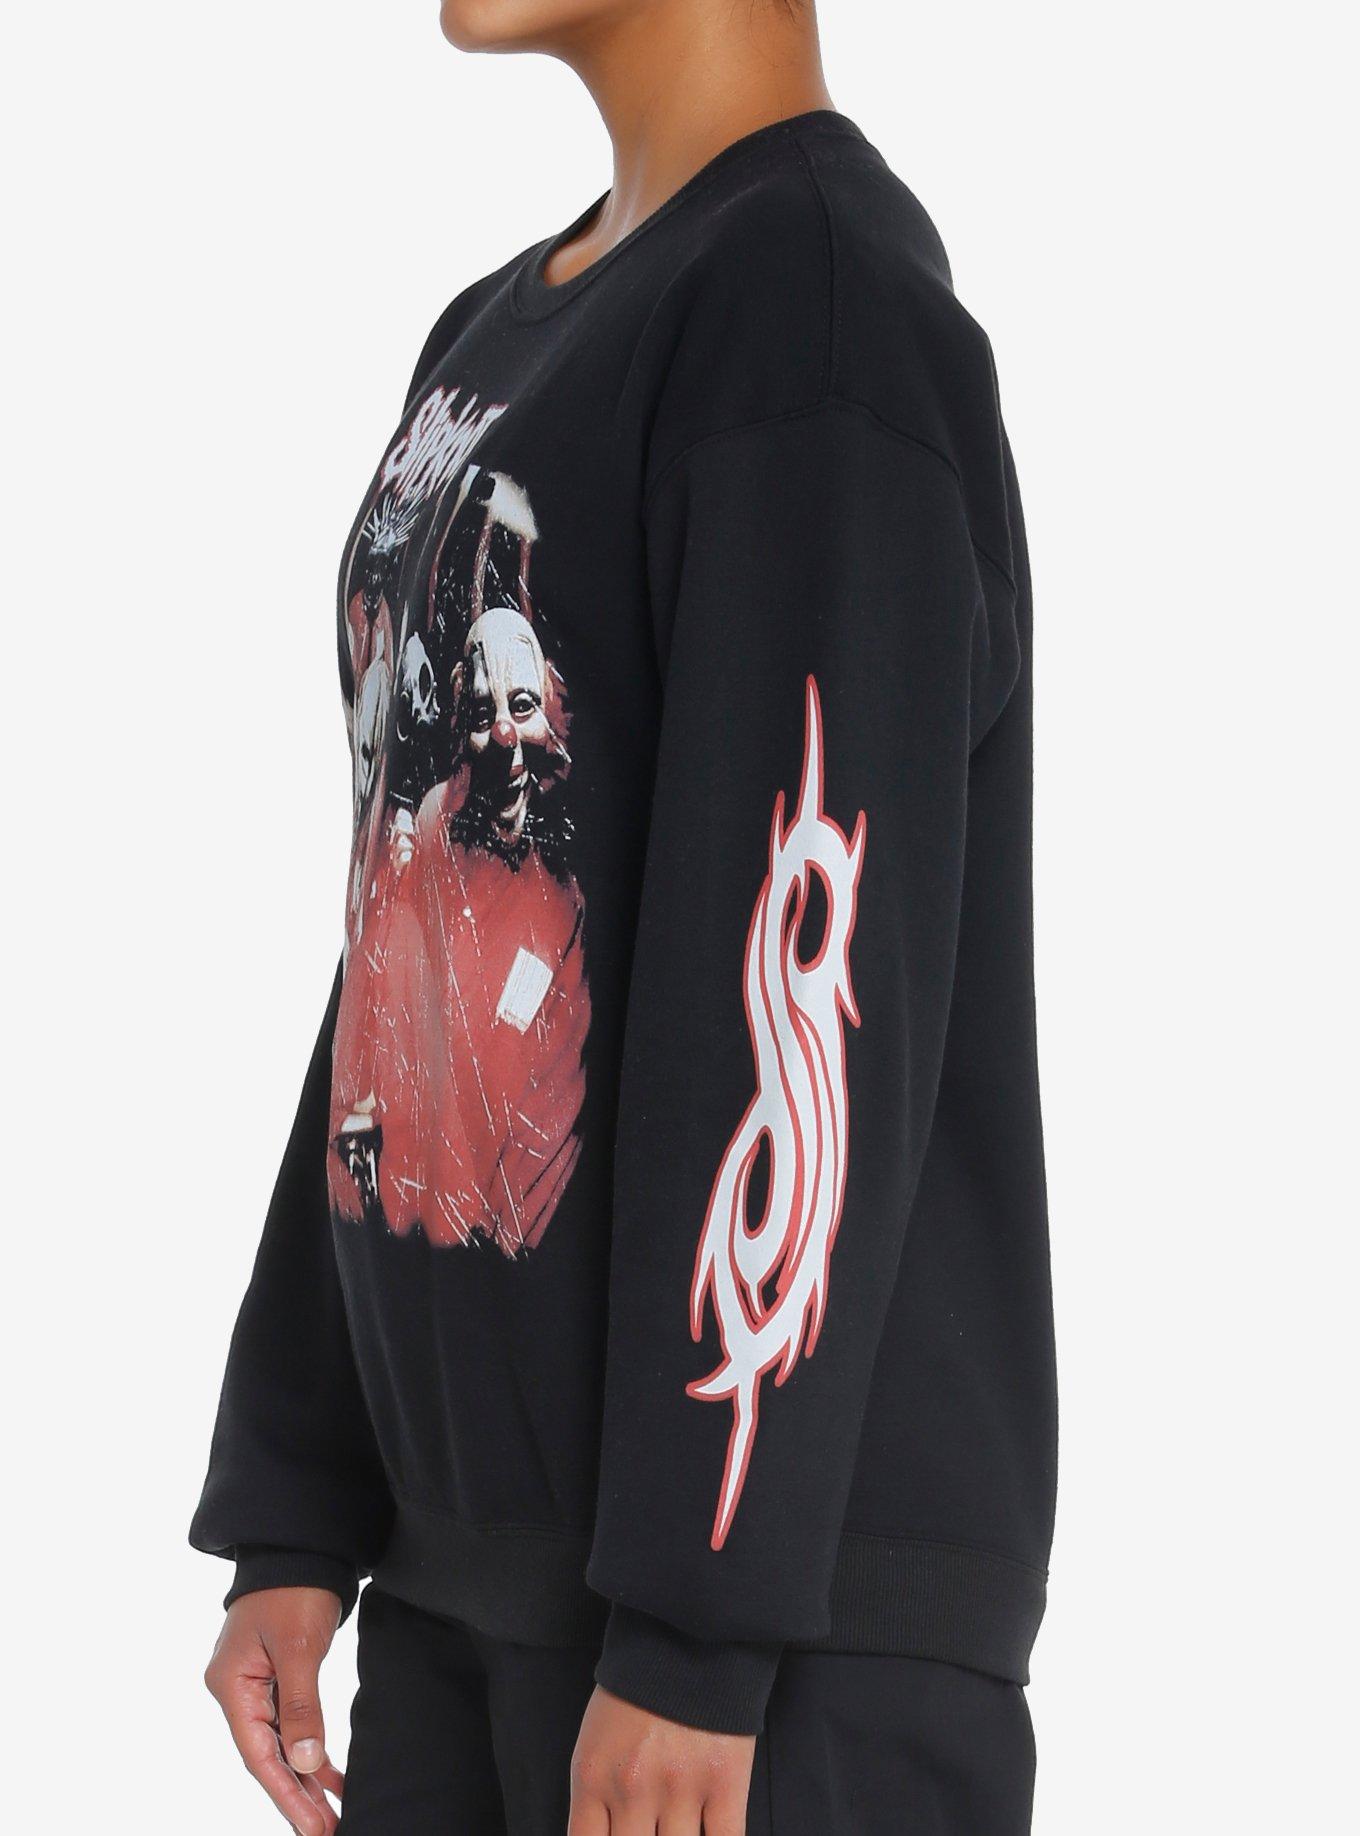 Slipknot Debut Album Cover Art Girls Sweatshirt, BLACK, alternate